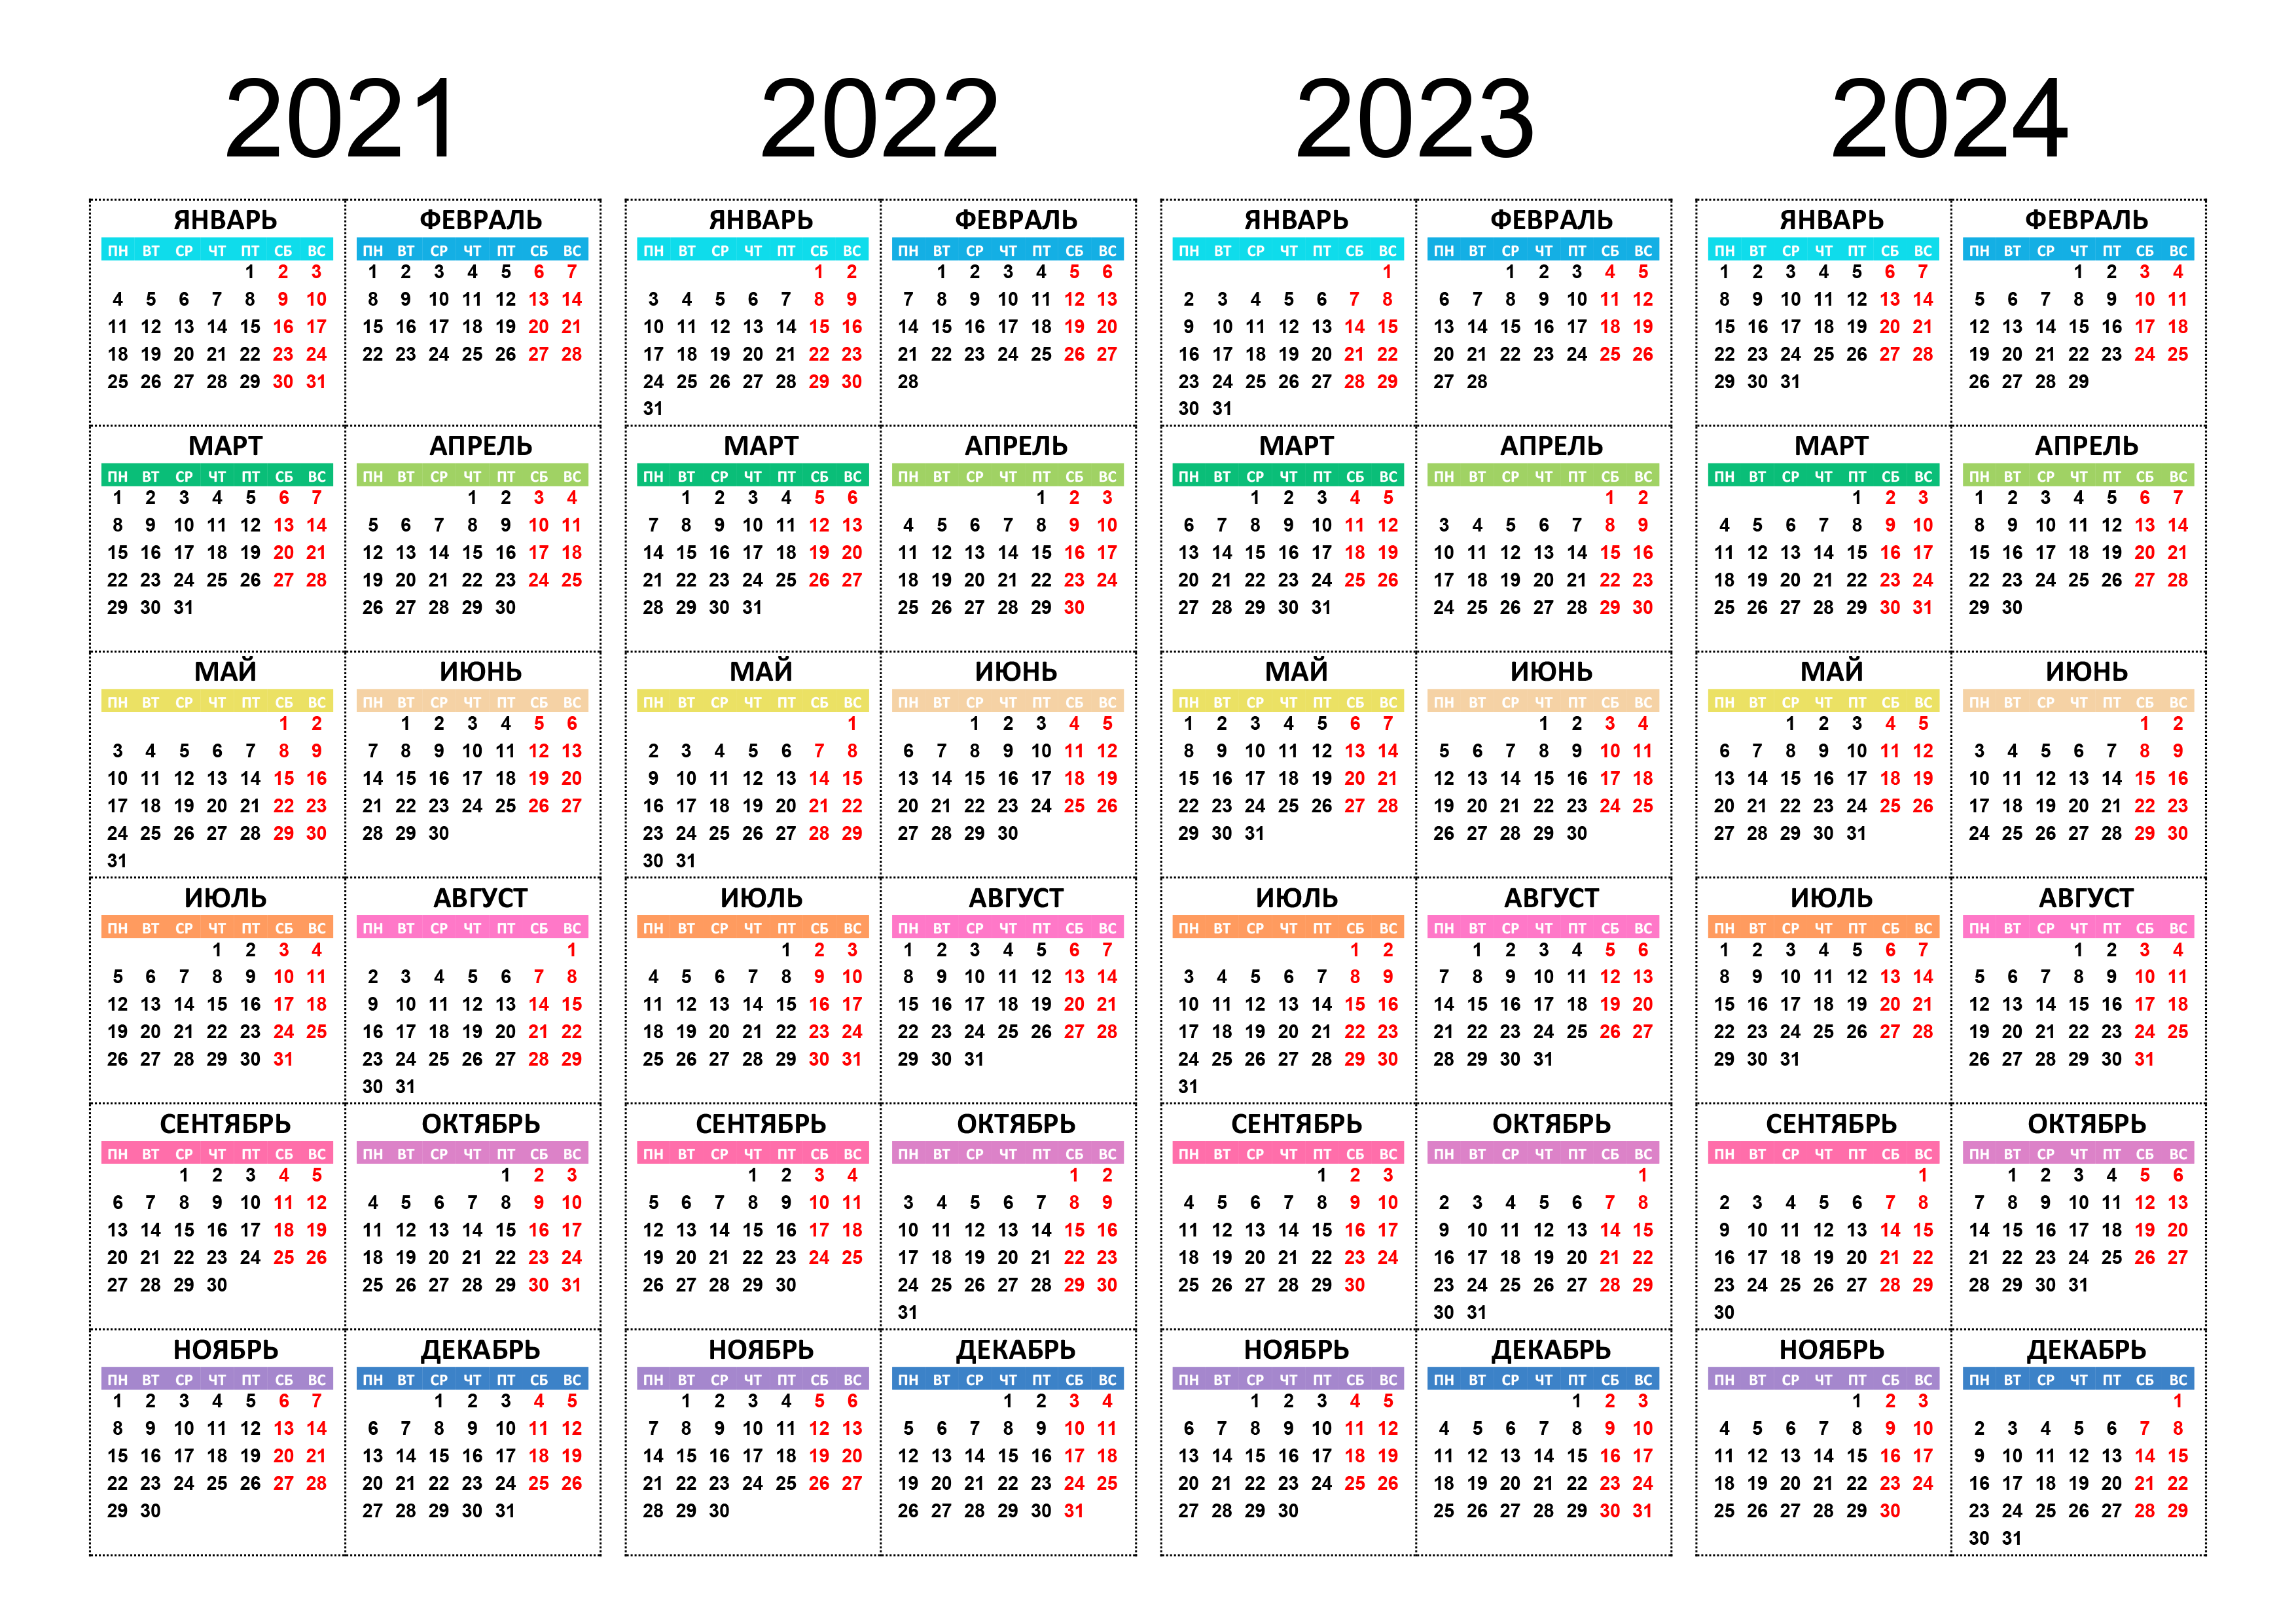 fiu-payroll-calendar-2021-payroll-calendar